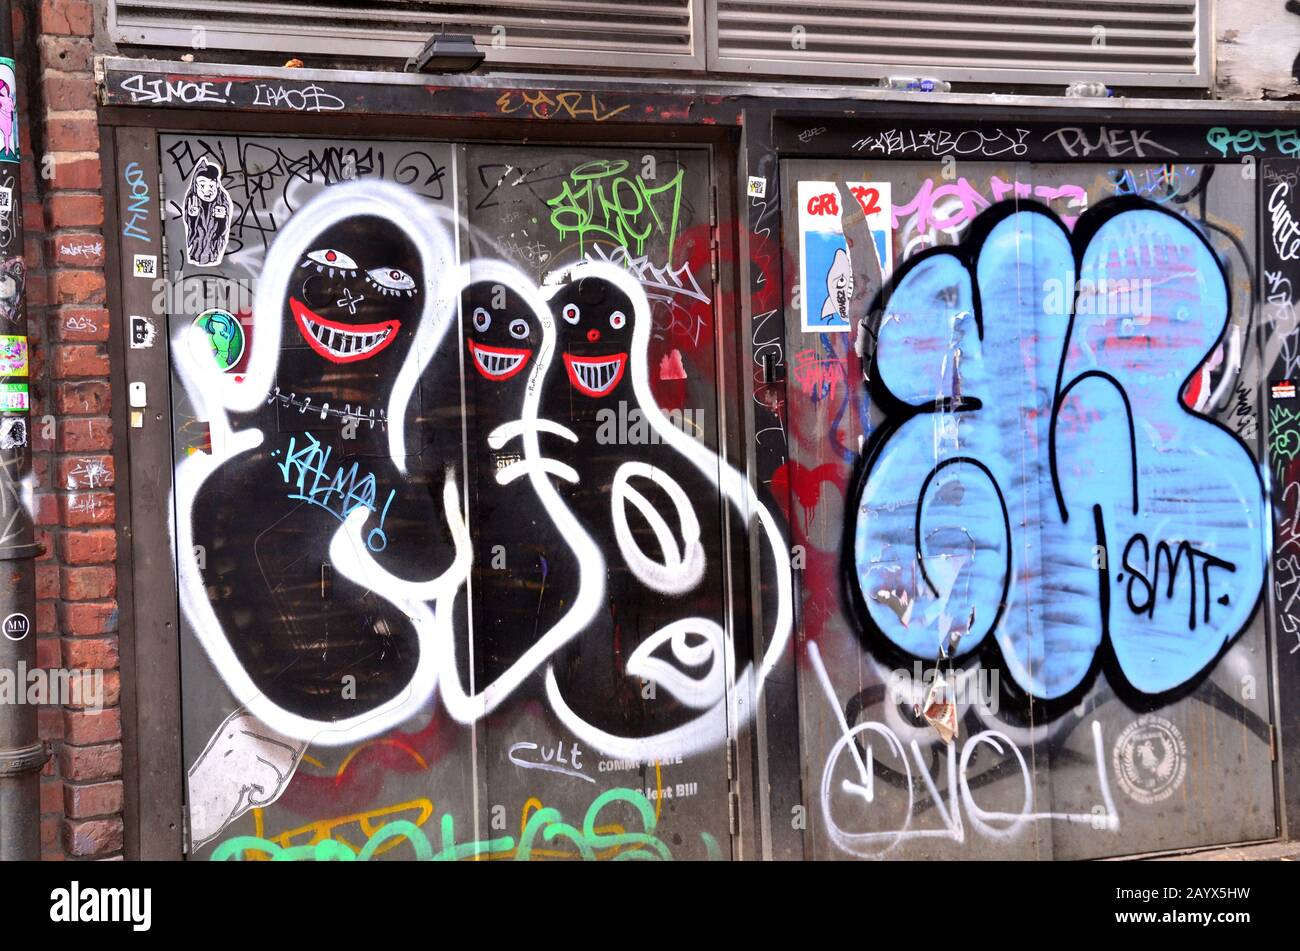 Opere d'arte e graffiti, che alcuni chiamerebbero vandalismo, decorano le strade nel quartiere settentrionale della città interna di Manchester, Regno Unito Foto Stock